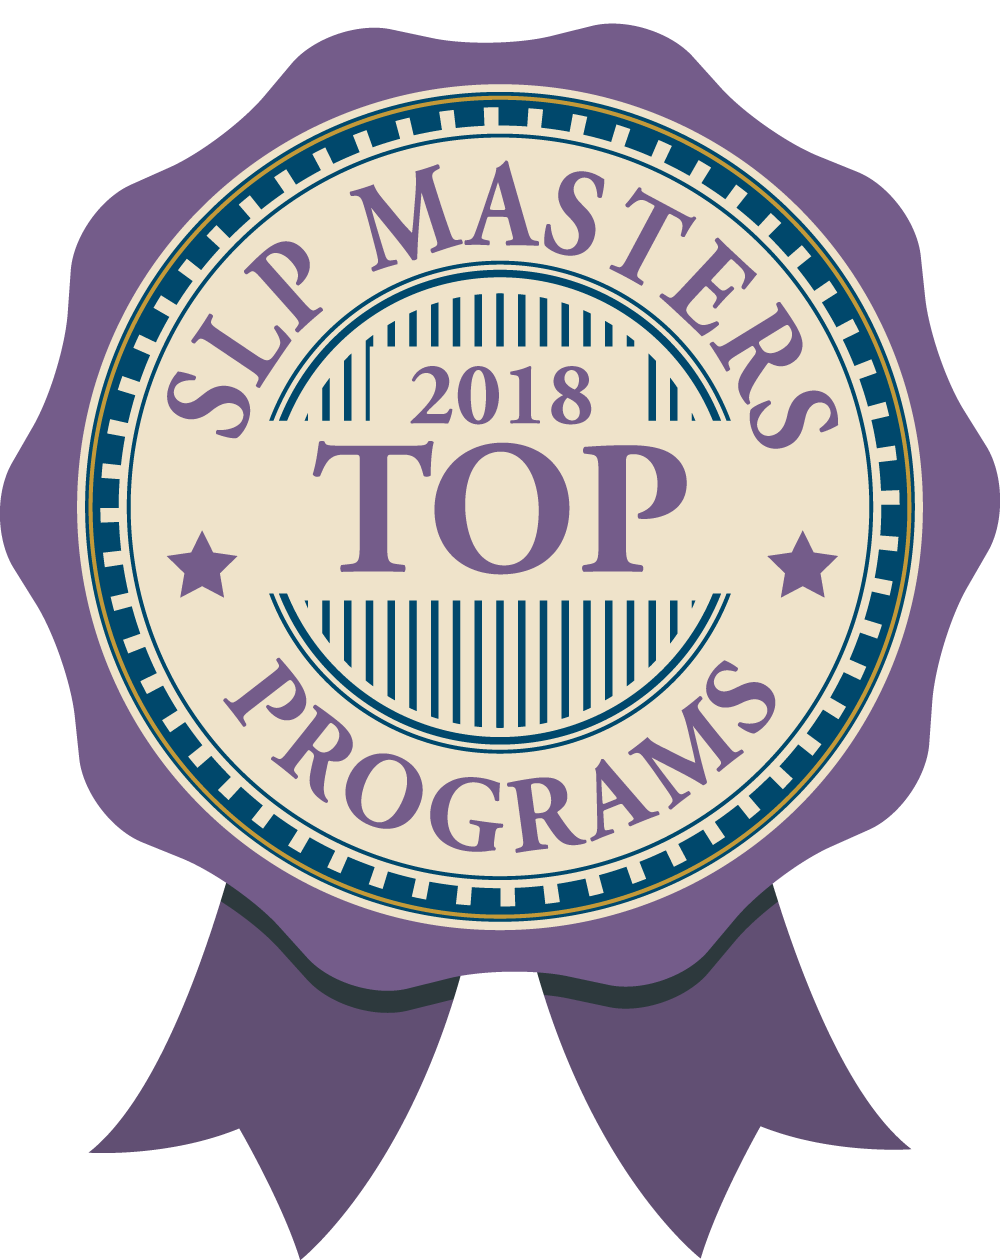 SLP masters 2018 top programs